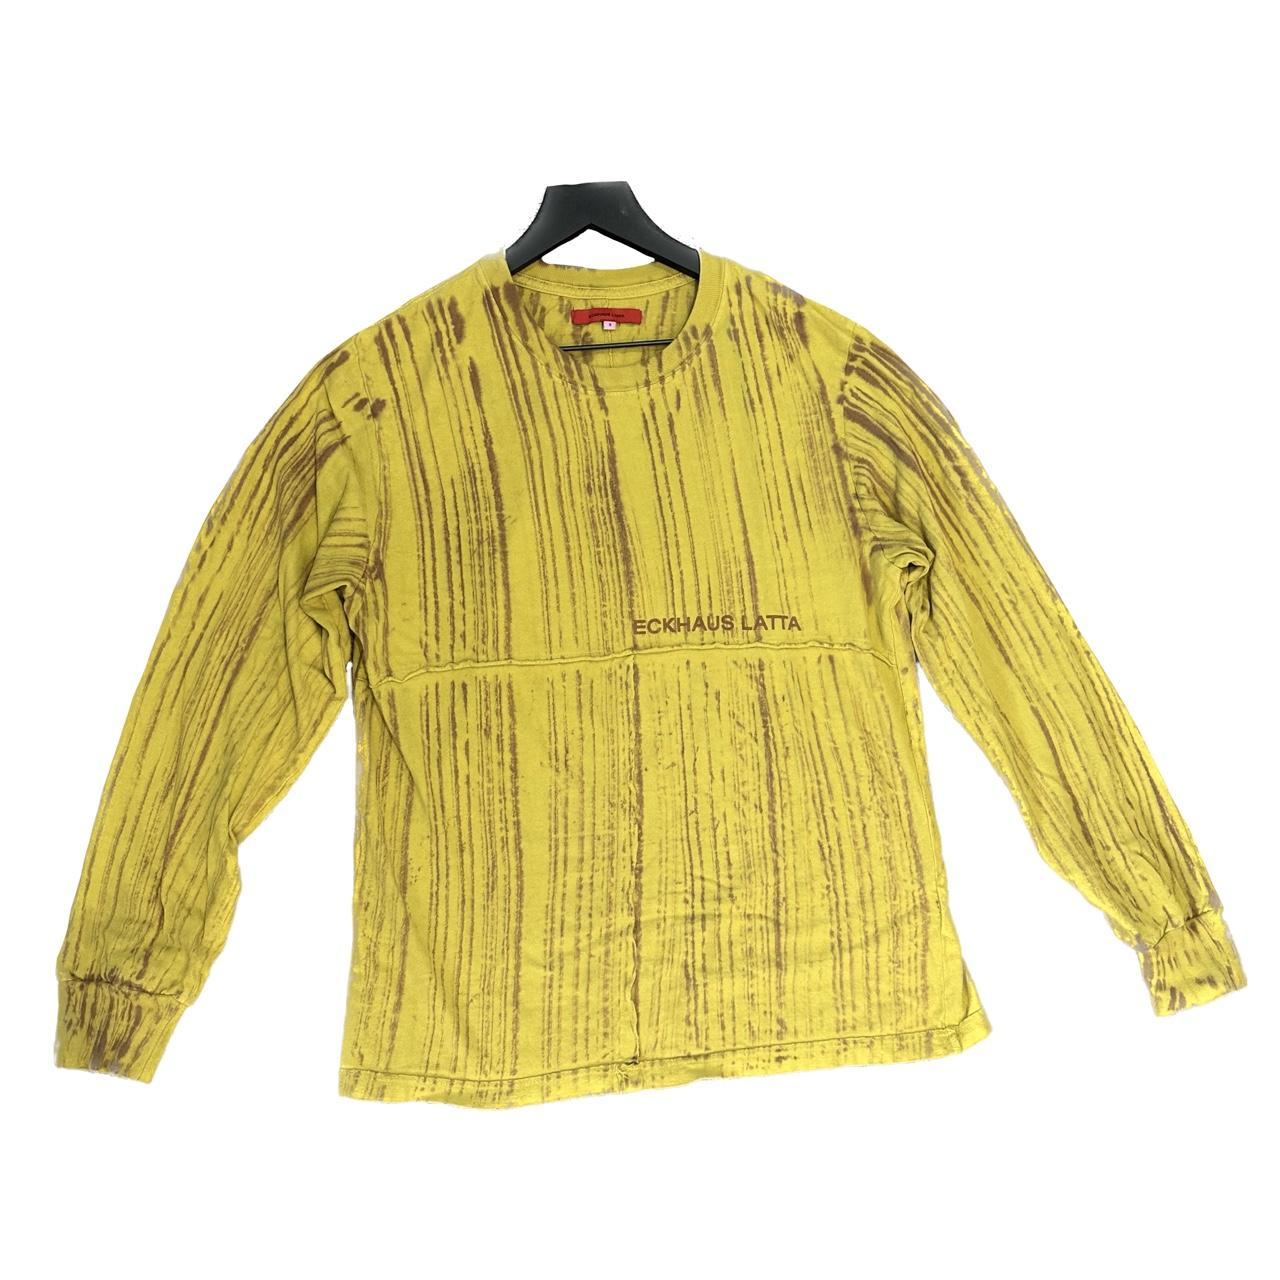 Eckhaus Latta Men's Yellow and Burgundy T-shirt